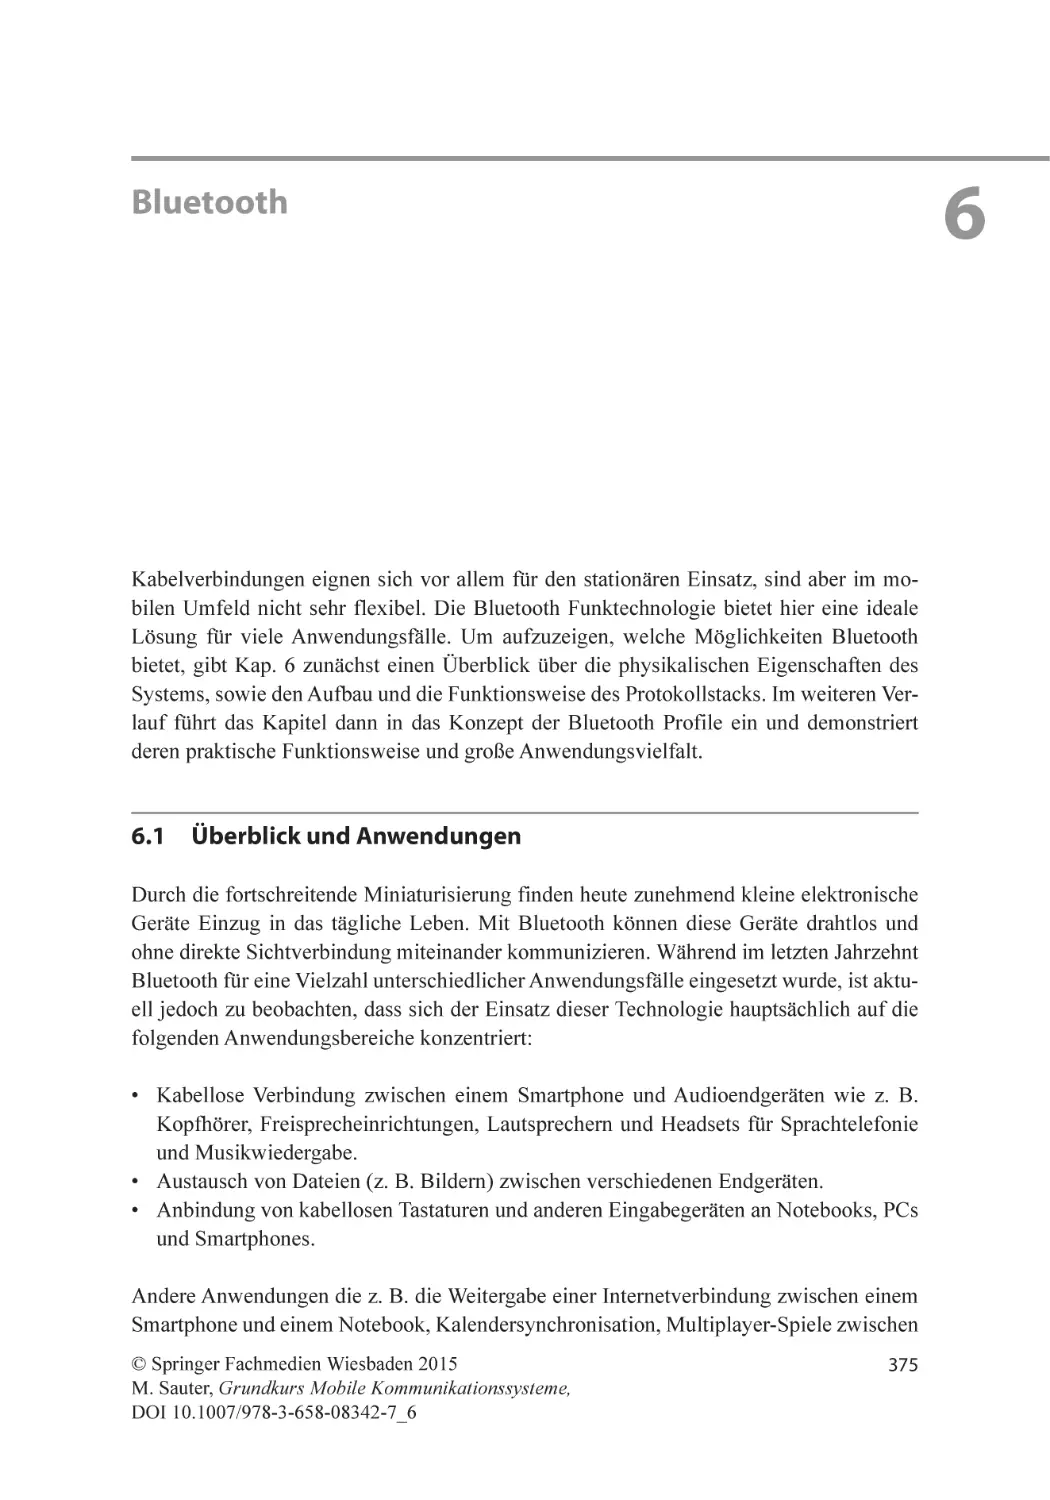 Kapitel 6
Bluetooth
6.1 Überblick und Anwendungen